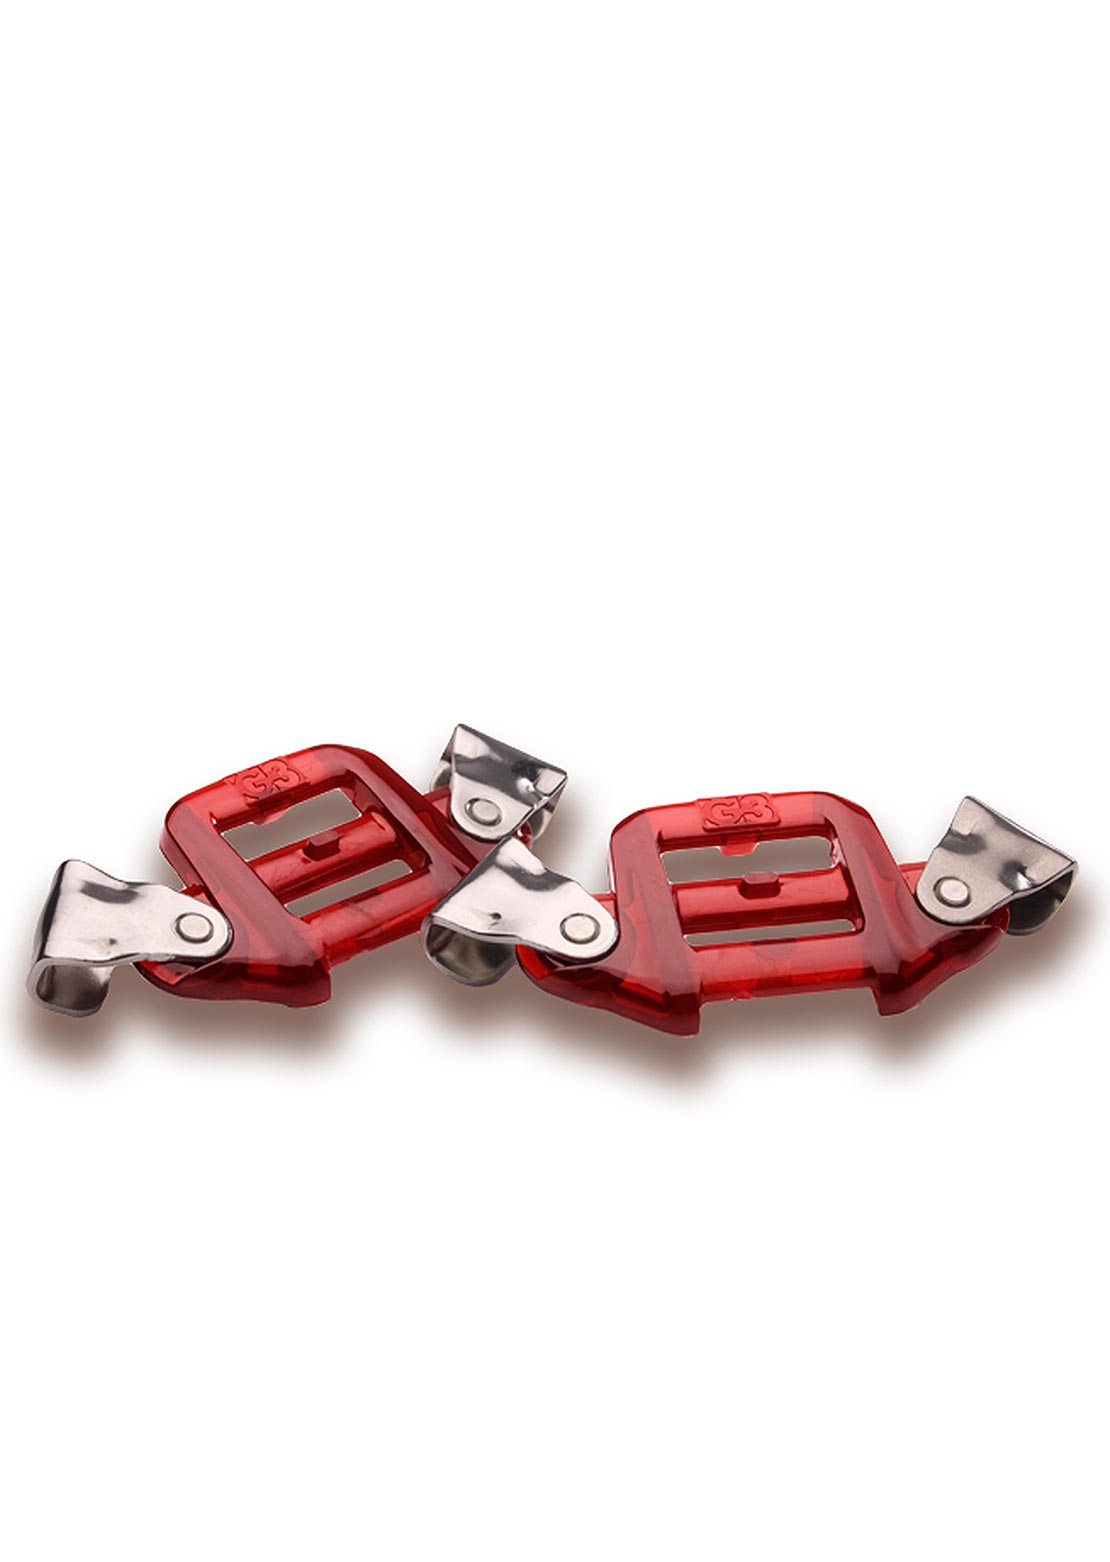 G3 TwinTip/Splitboard Tail Connectors - Pair Red